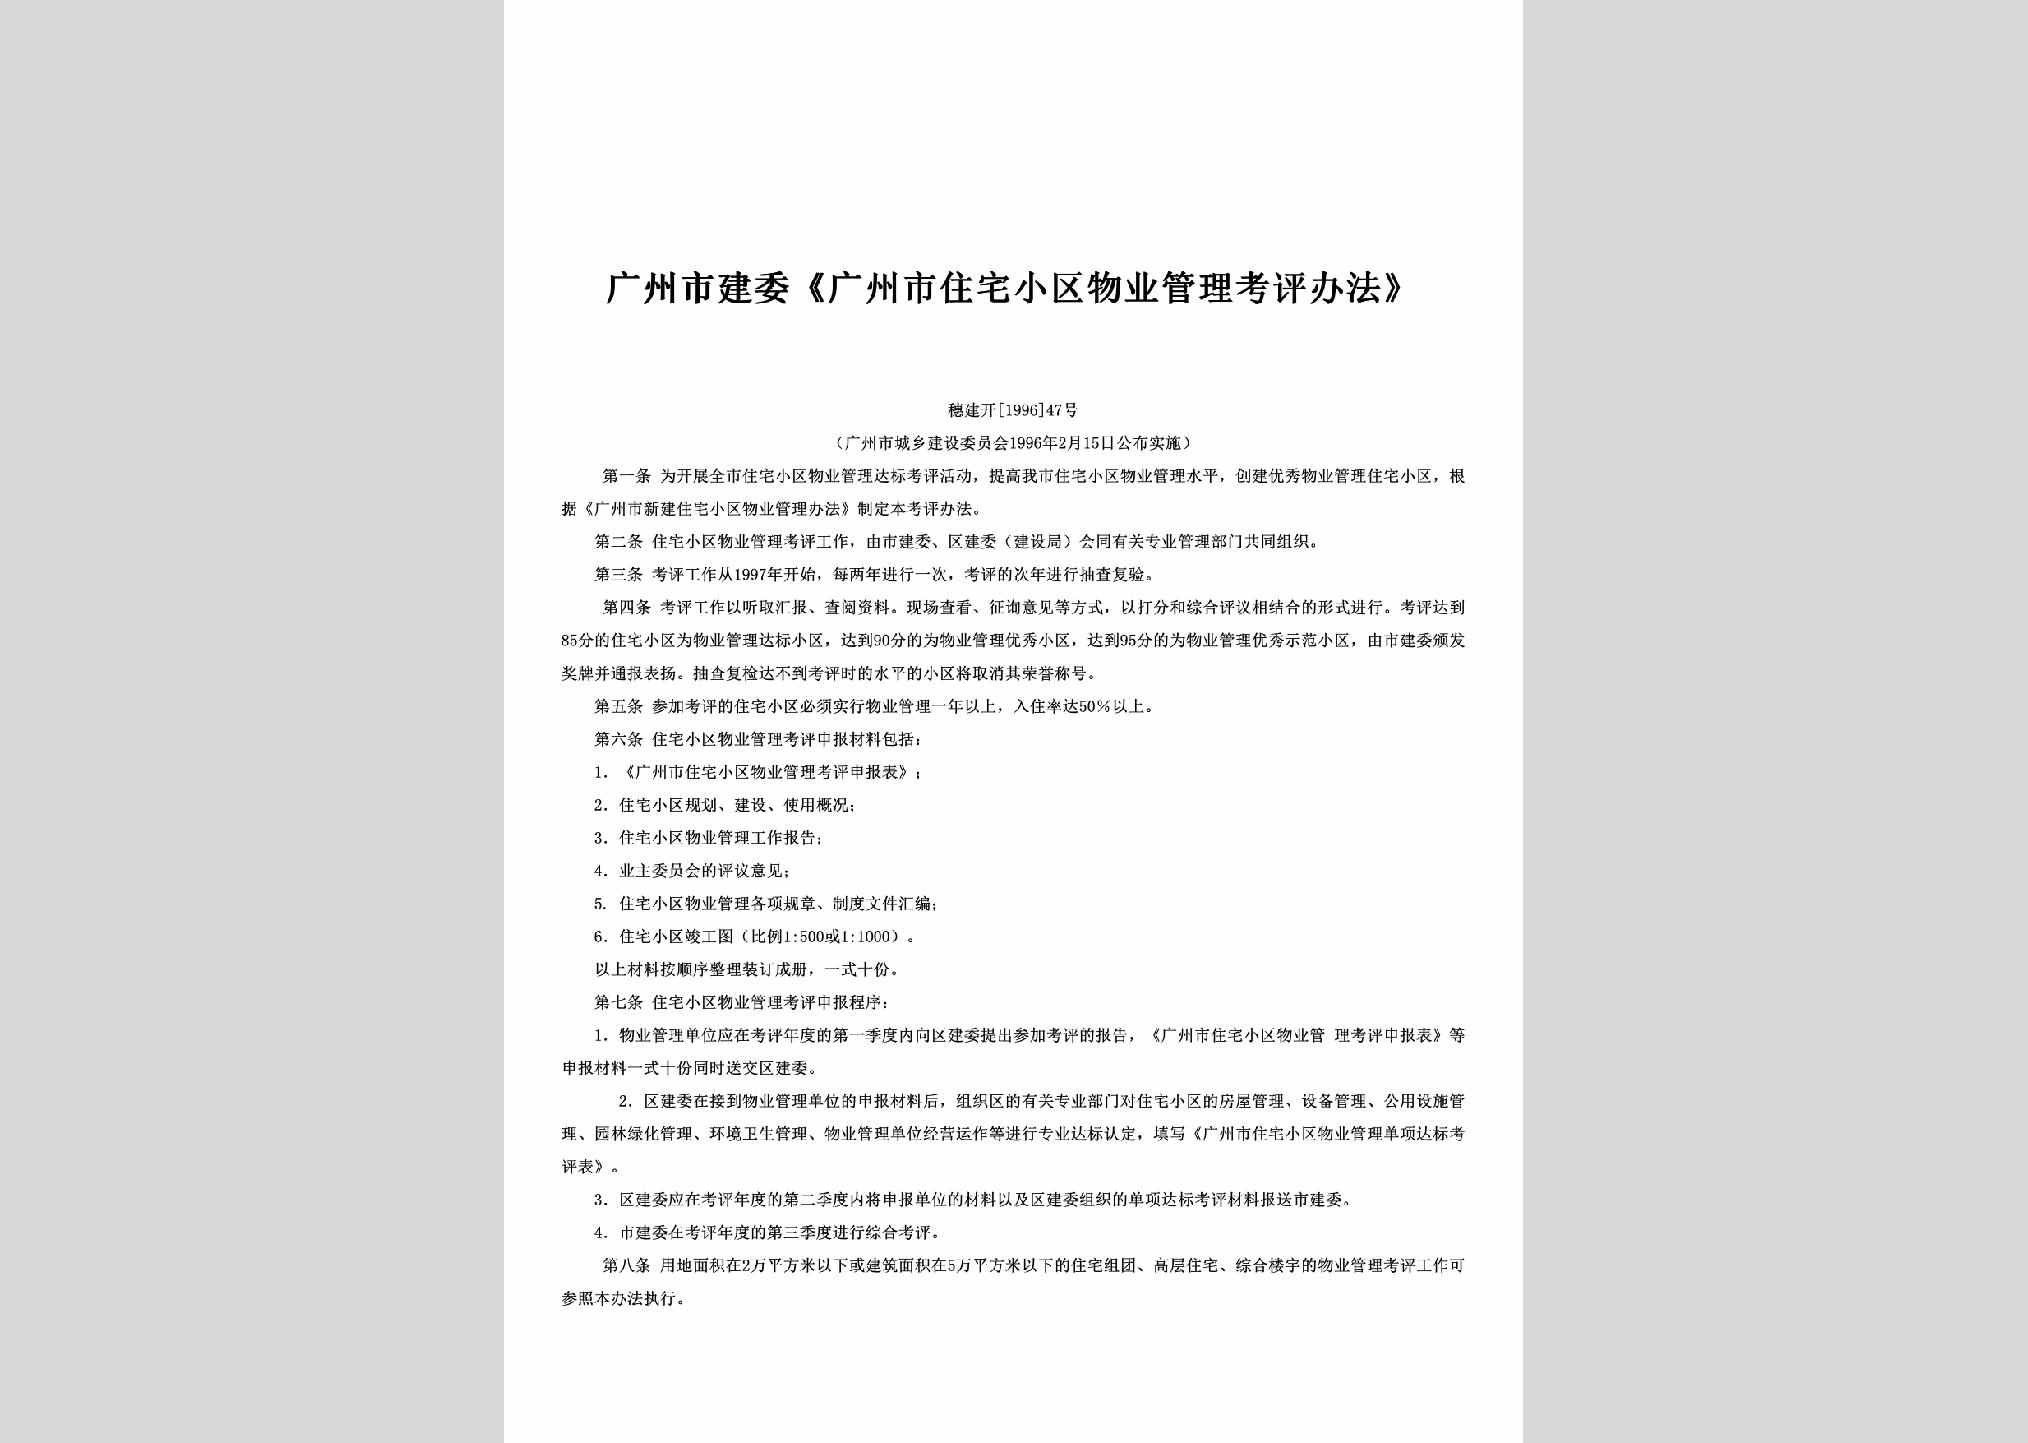 穗建开[1996]47号：《广州市住宅小区物业管理考评办法》